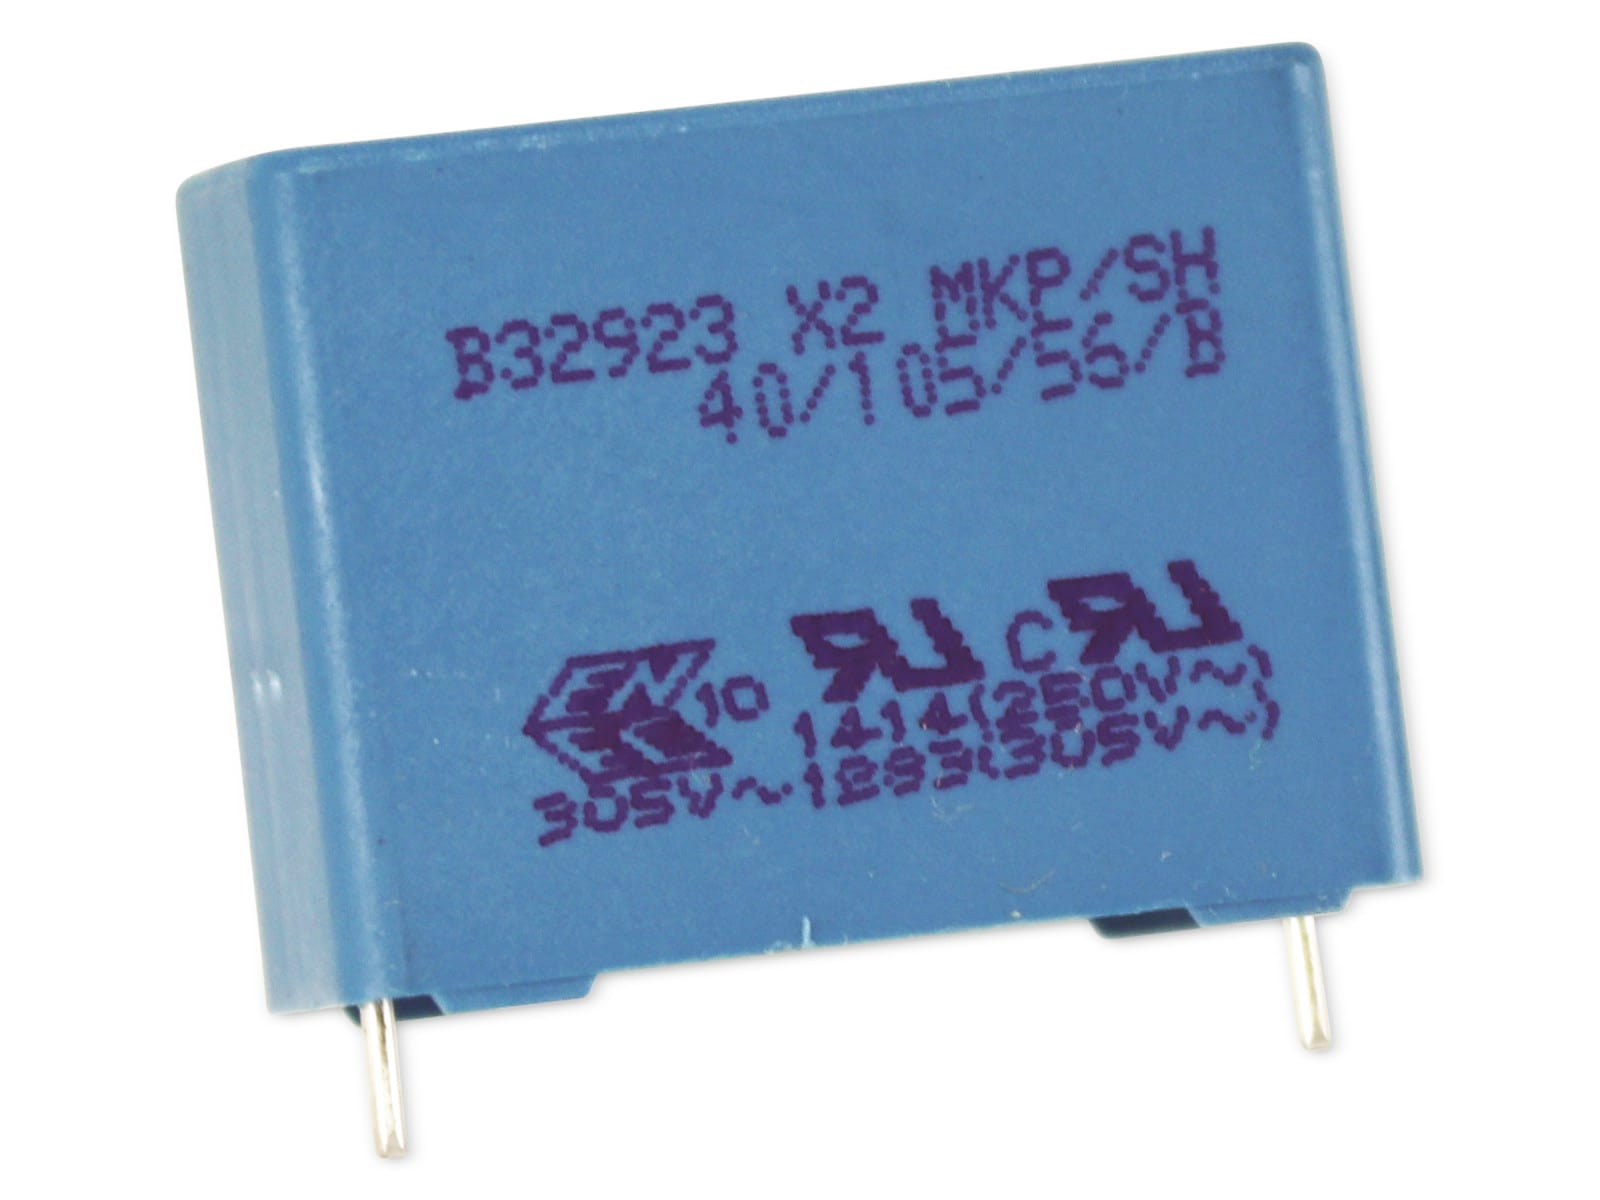 EPCOS Funkentstörkondensator B32923, 1 µF, 305 V~